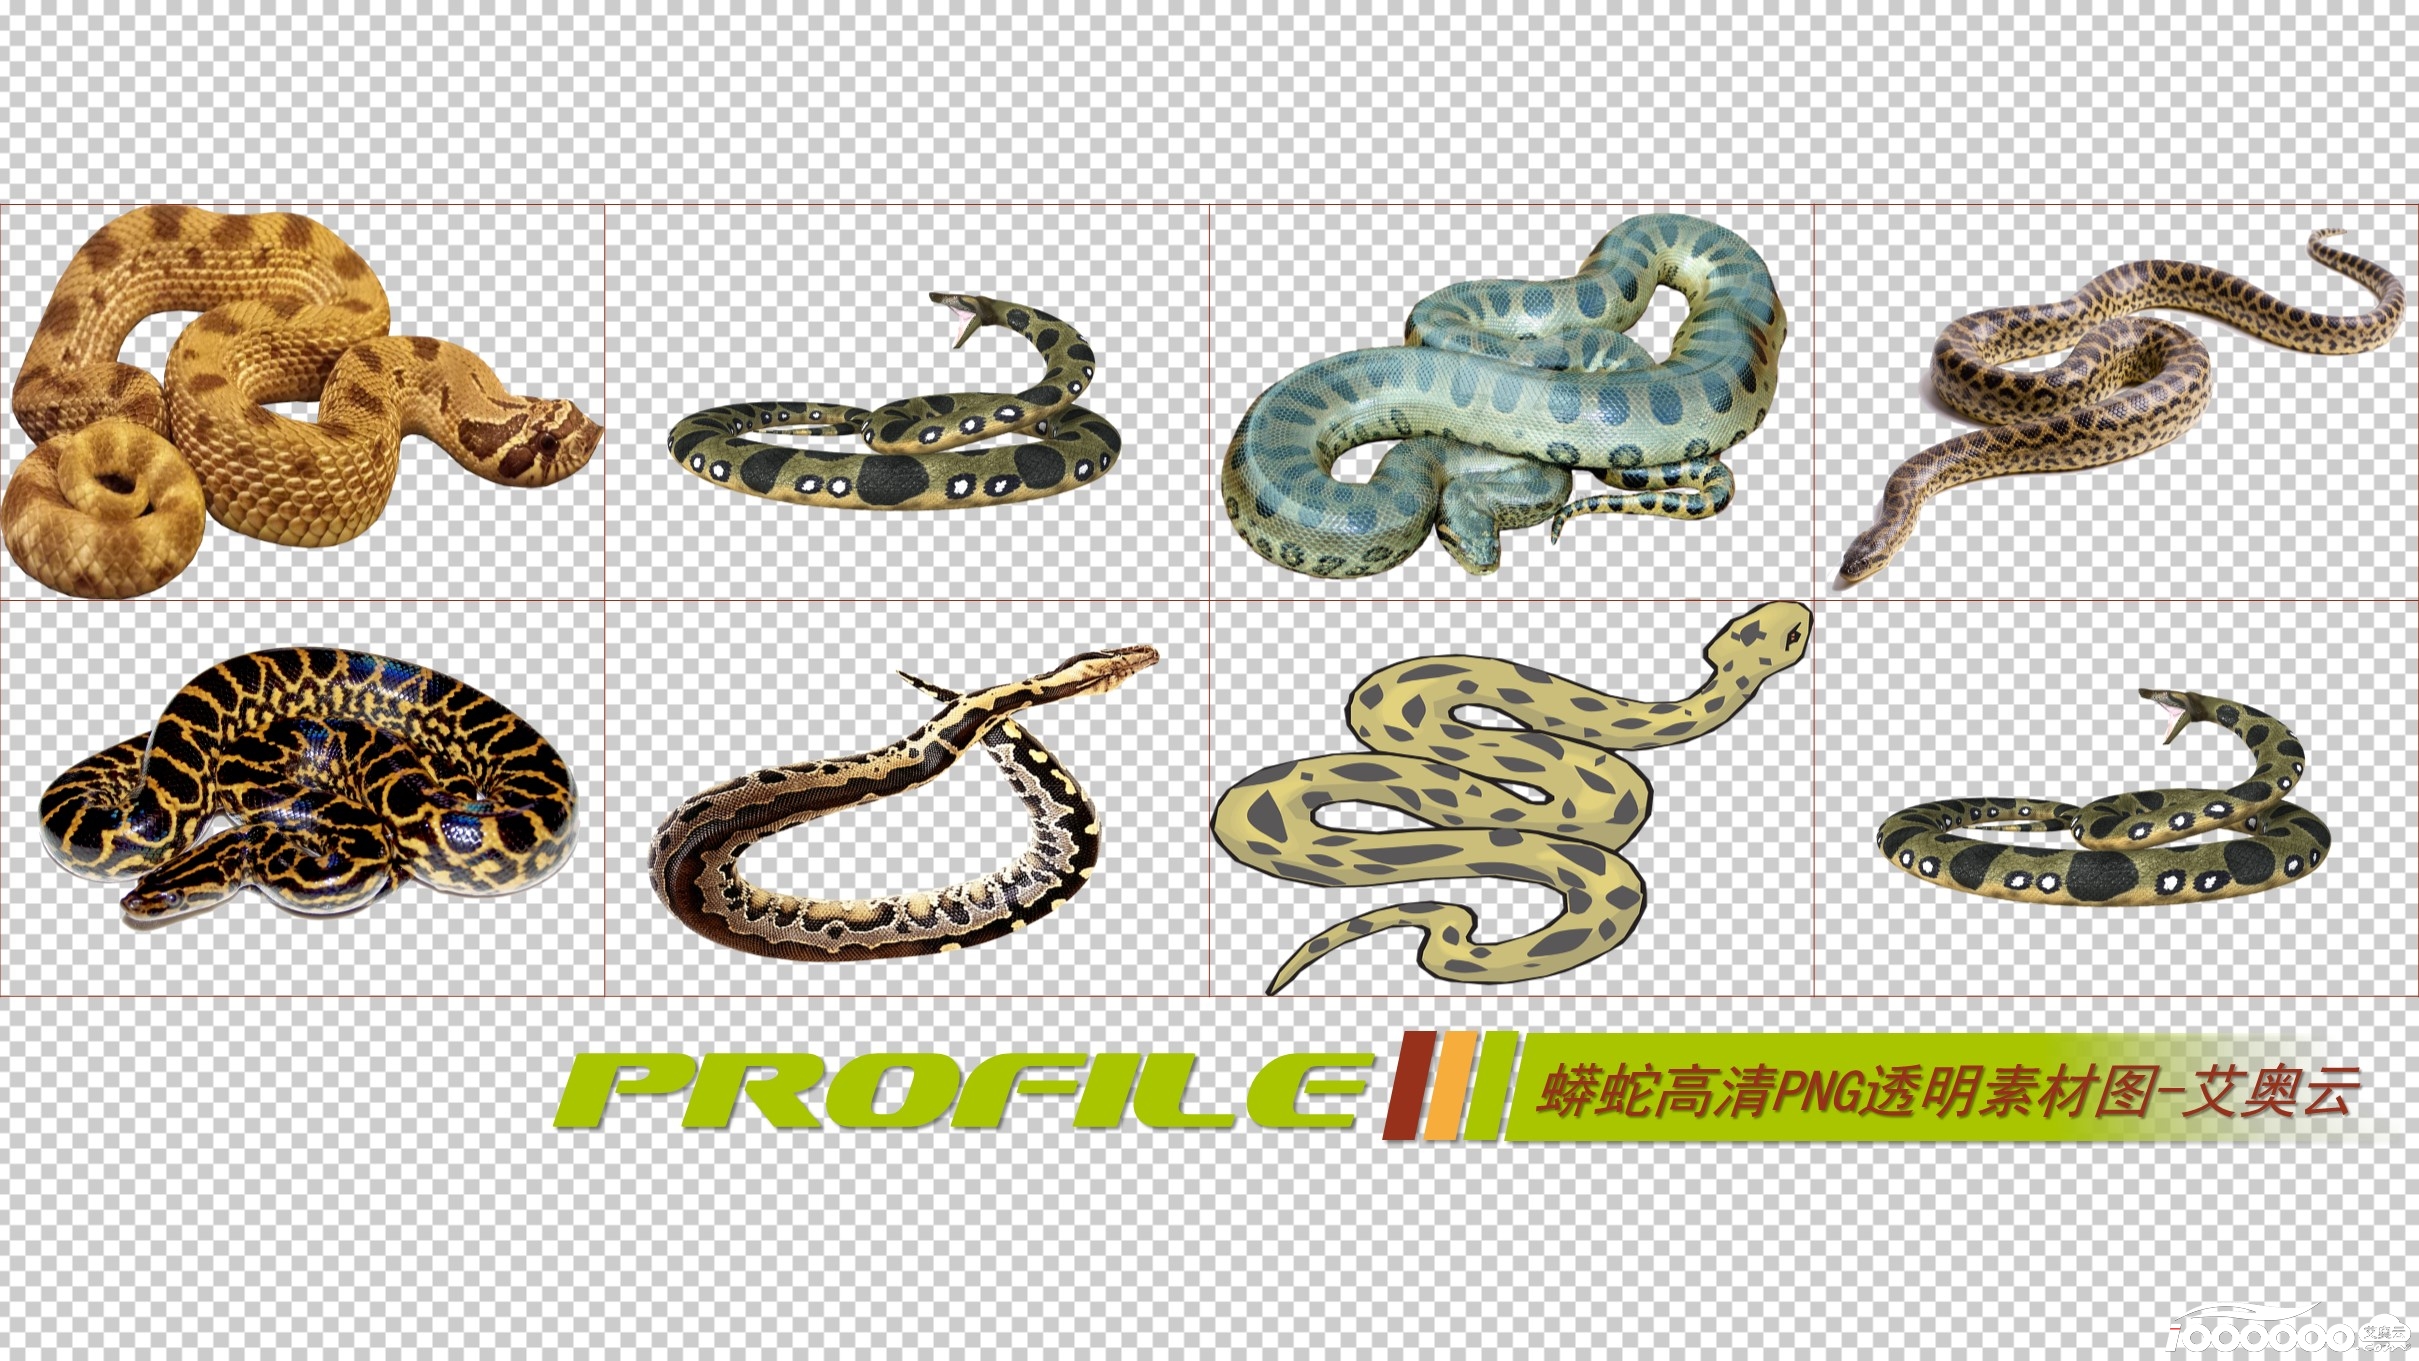 蟒蛇高清png透明图片图形素材打包免费下载 (2).JPG